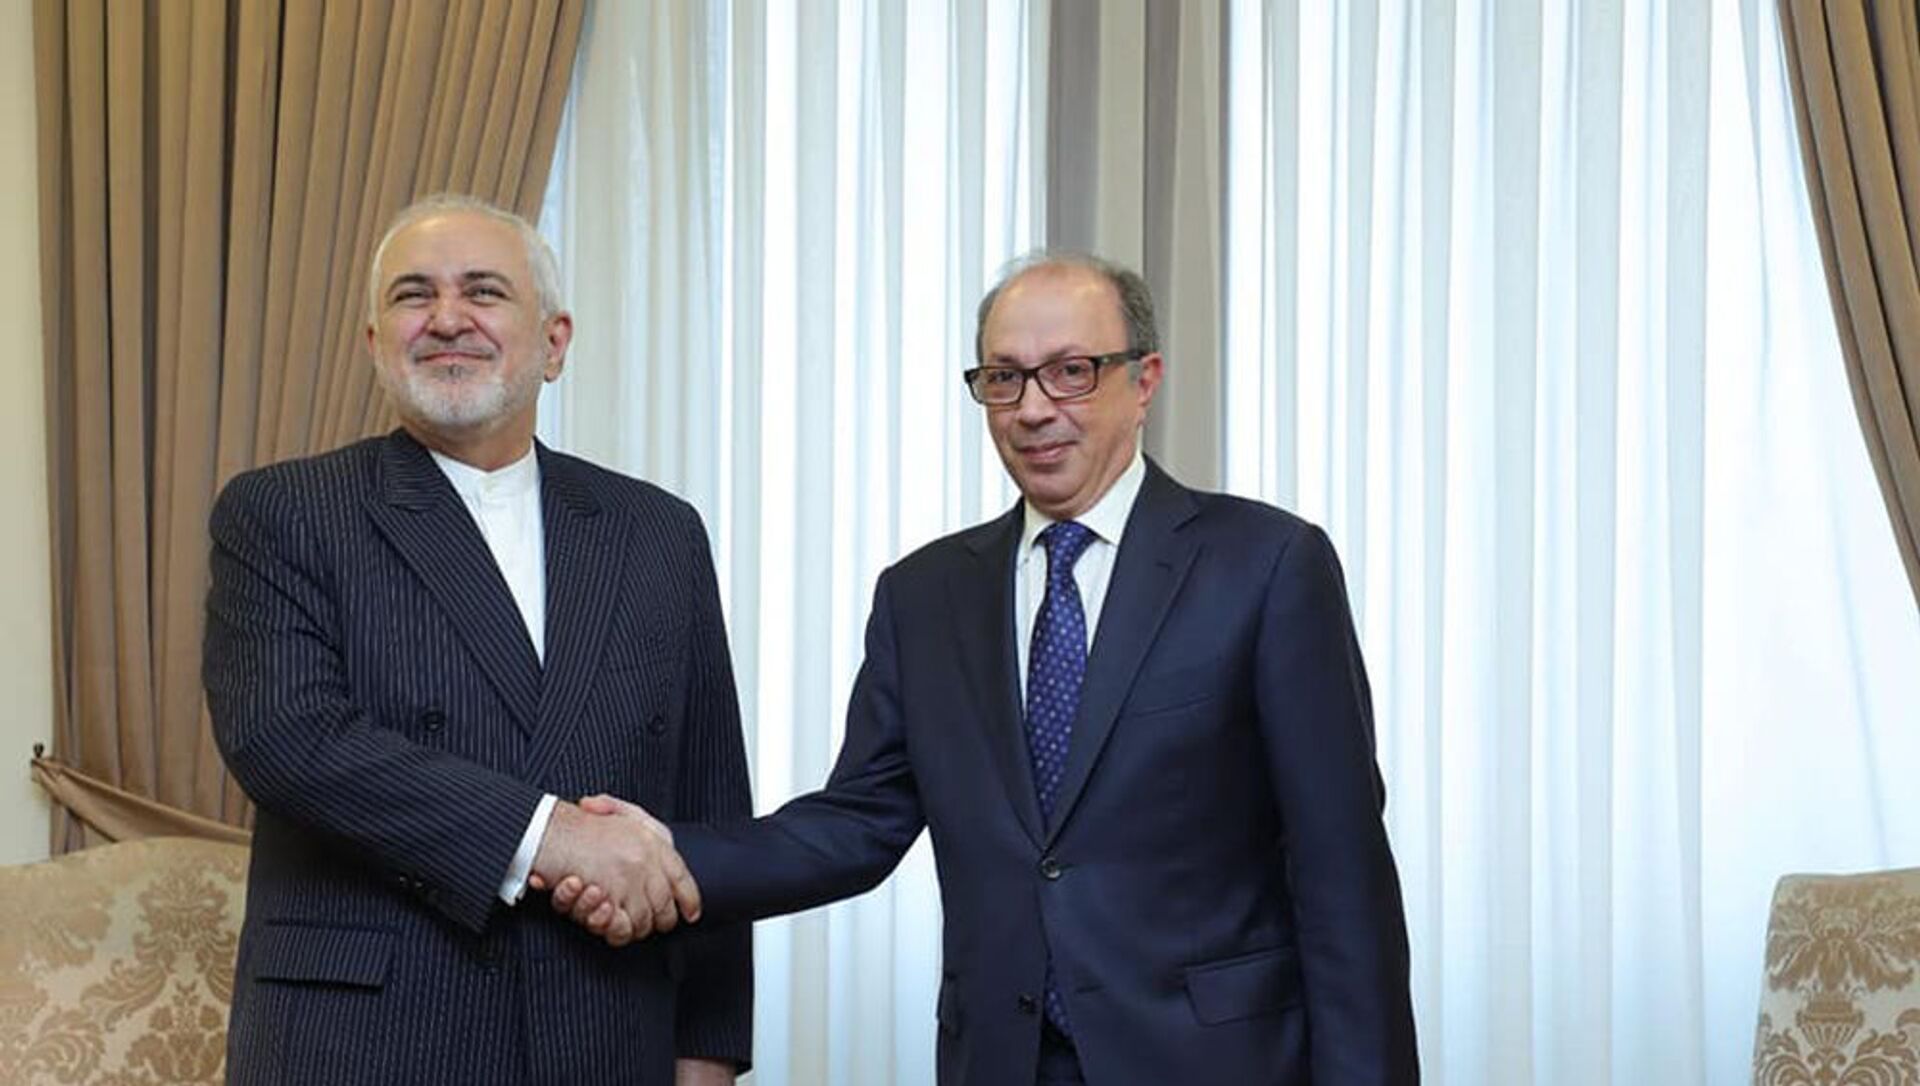 И.о. министра иностранных дел Ара Айвазян на встрече с министром иностранных дел Ирана Джавадом Зарифом 26 мая 2021 года - Sputnik Армения, 1920, 26.05.2021